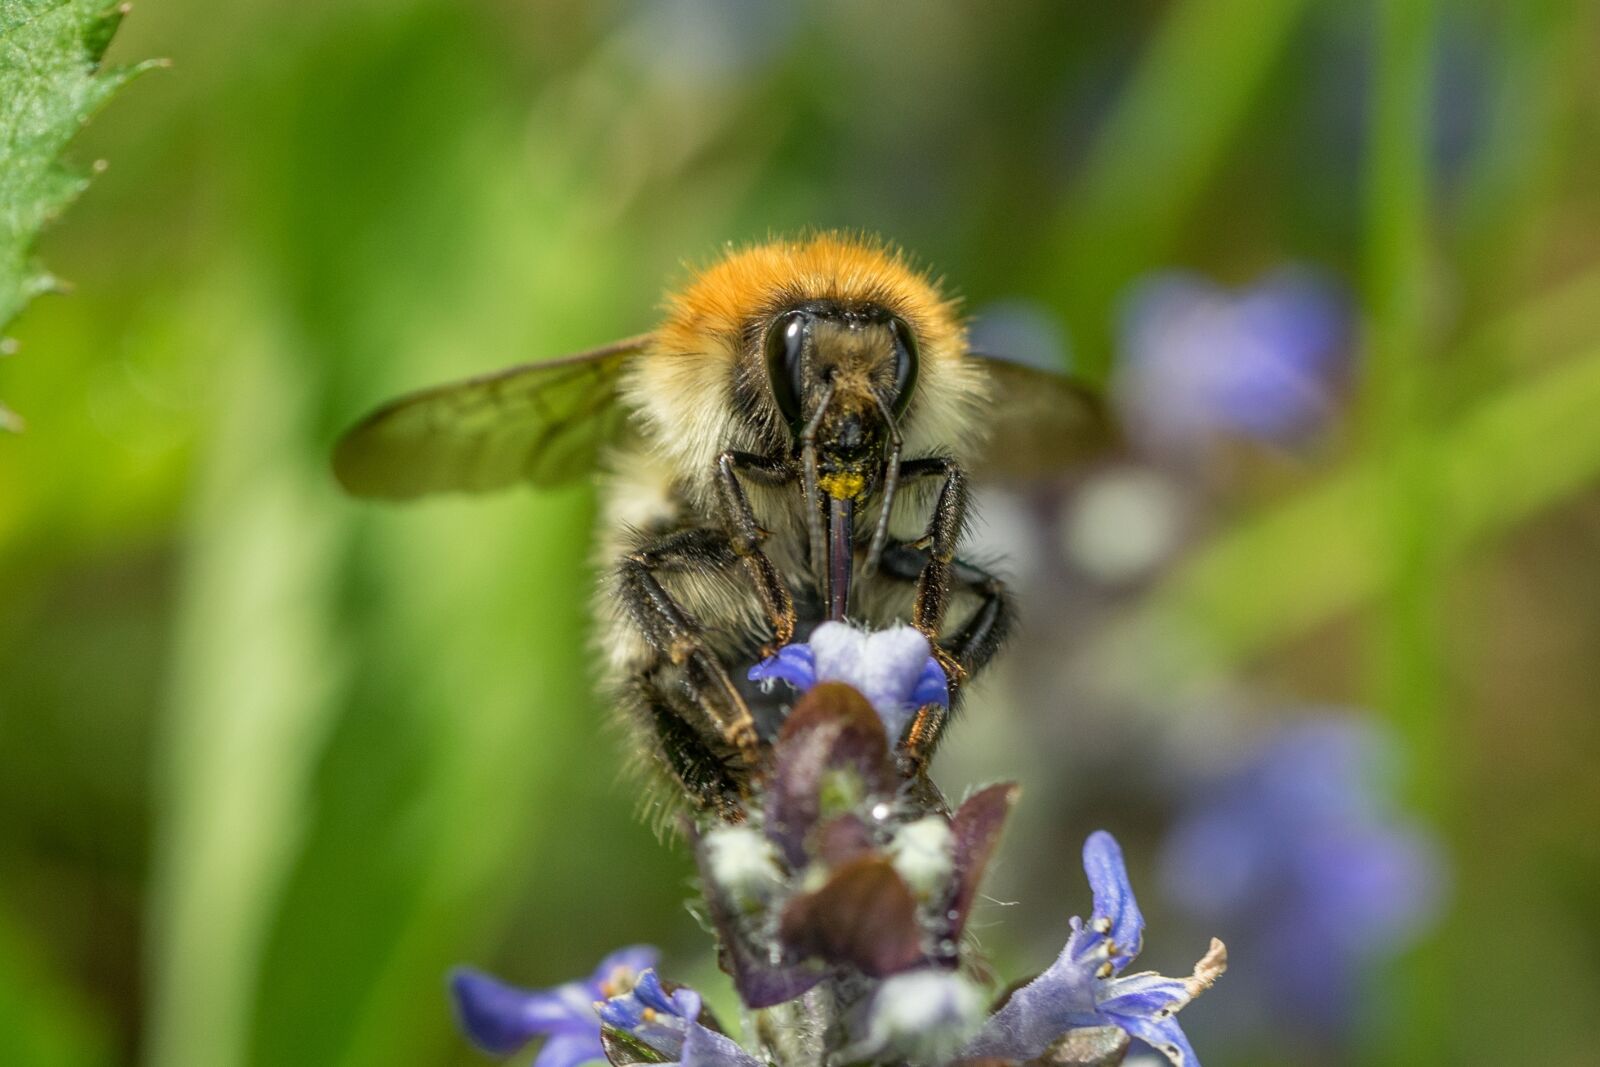 Sony a7 + Sony FE 90mm F2.8 Macro G OSS sample photo. Bee, pollination, macro photography